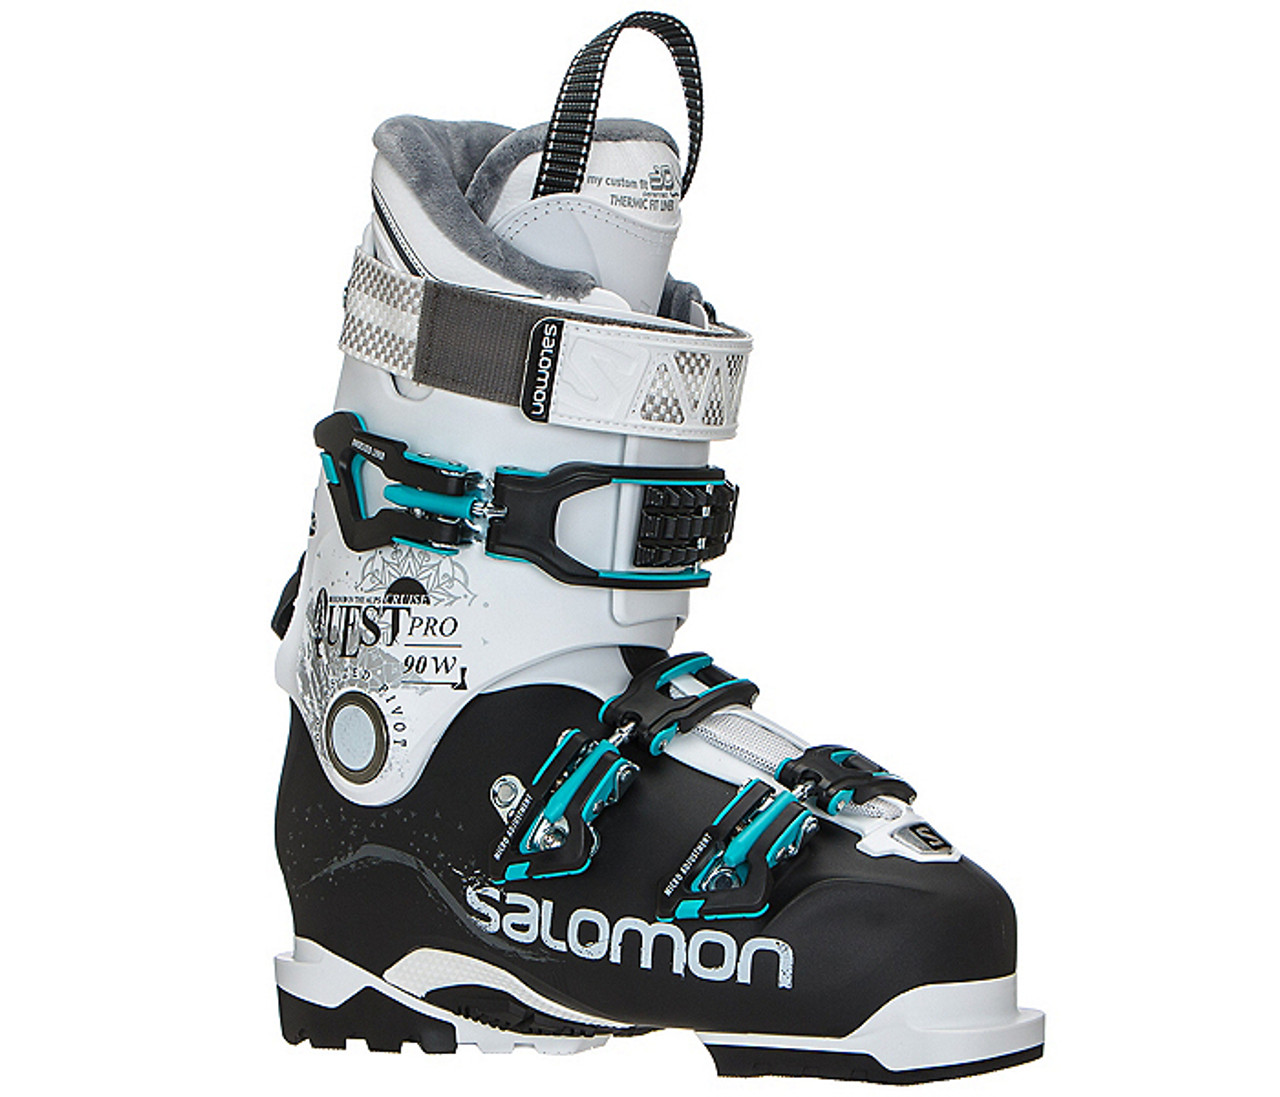 Christchurch Kom op hvid Salomon Quest Pro Cruise 90 | Intermediate Ski Boots | Get Boards